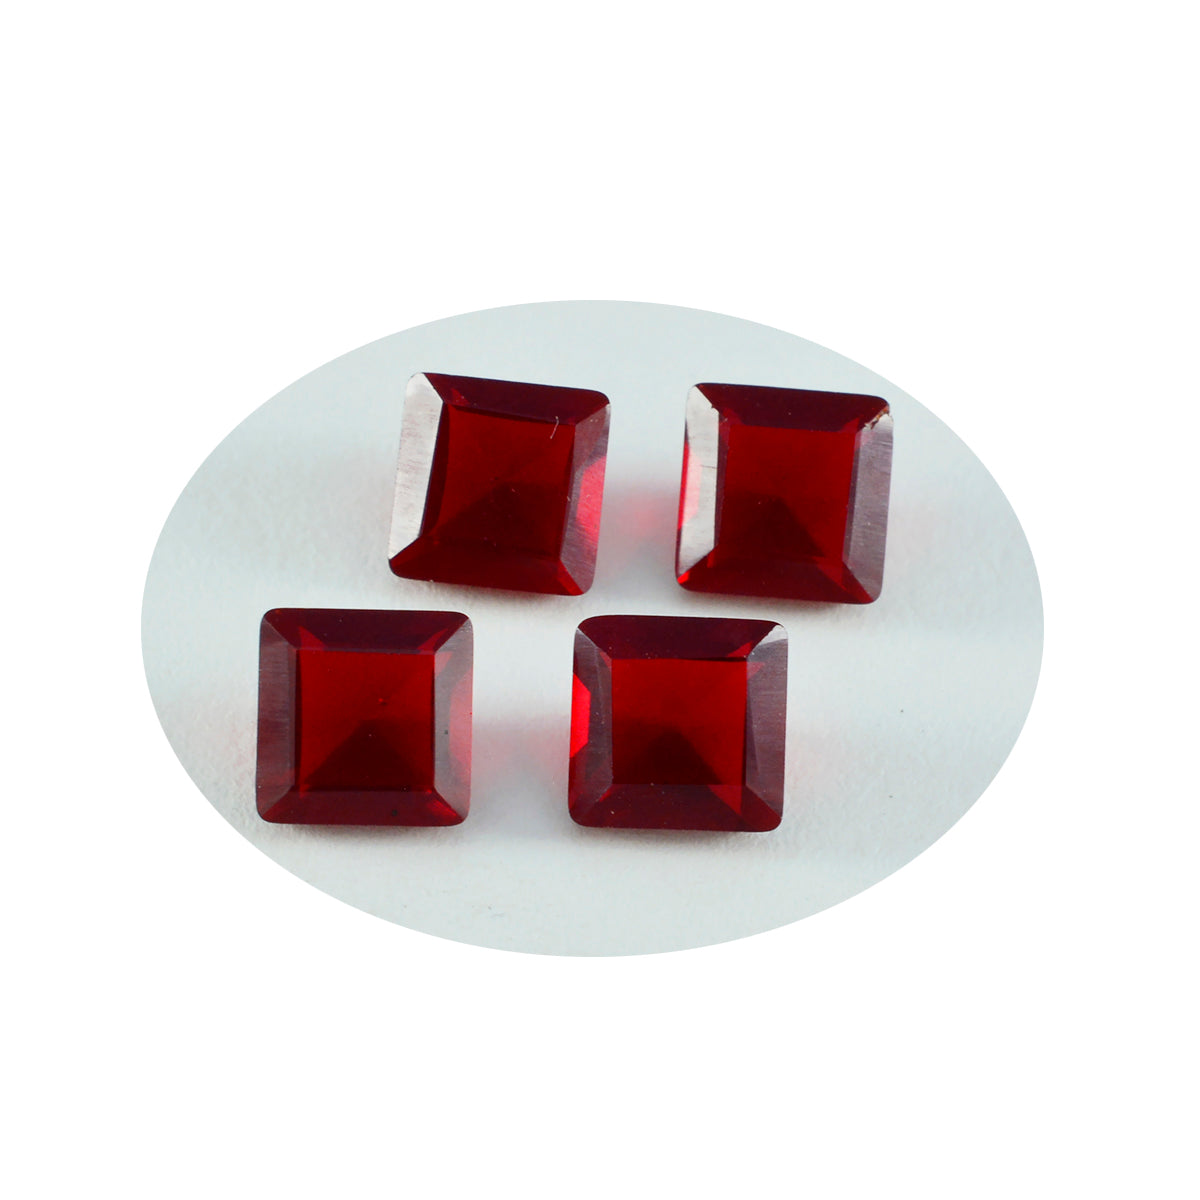 Riyogems 1 Stück roter Rubin mit CZ, facettiert, 10 x 10 mm, quadratische Form, süße Qualität, lose Edelsteine